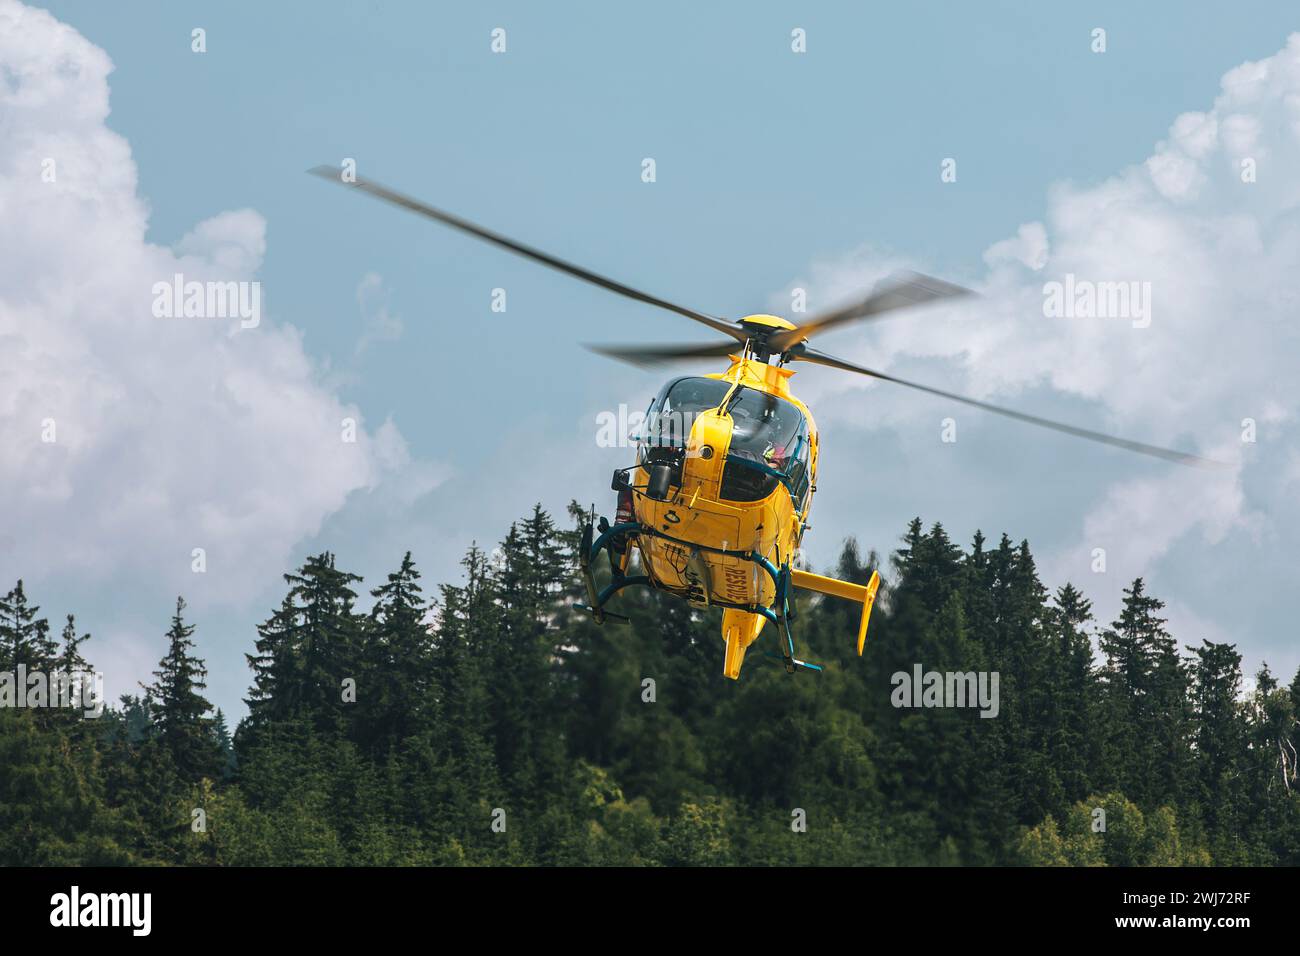 Hubschrauber des Rettungsdienstes landet in schwer zugänglichem Gelände.Themen Rettung, Hilfe und Hoffnung. Stockfoto